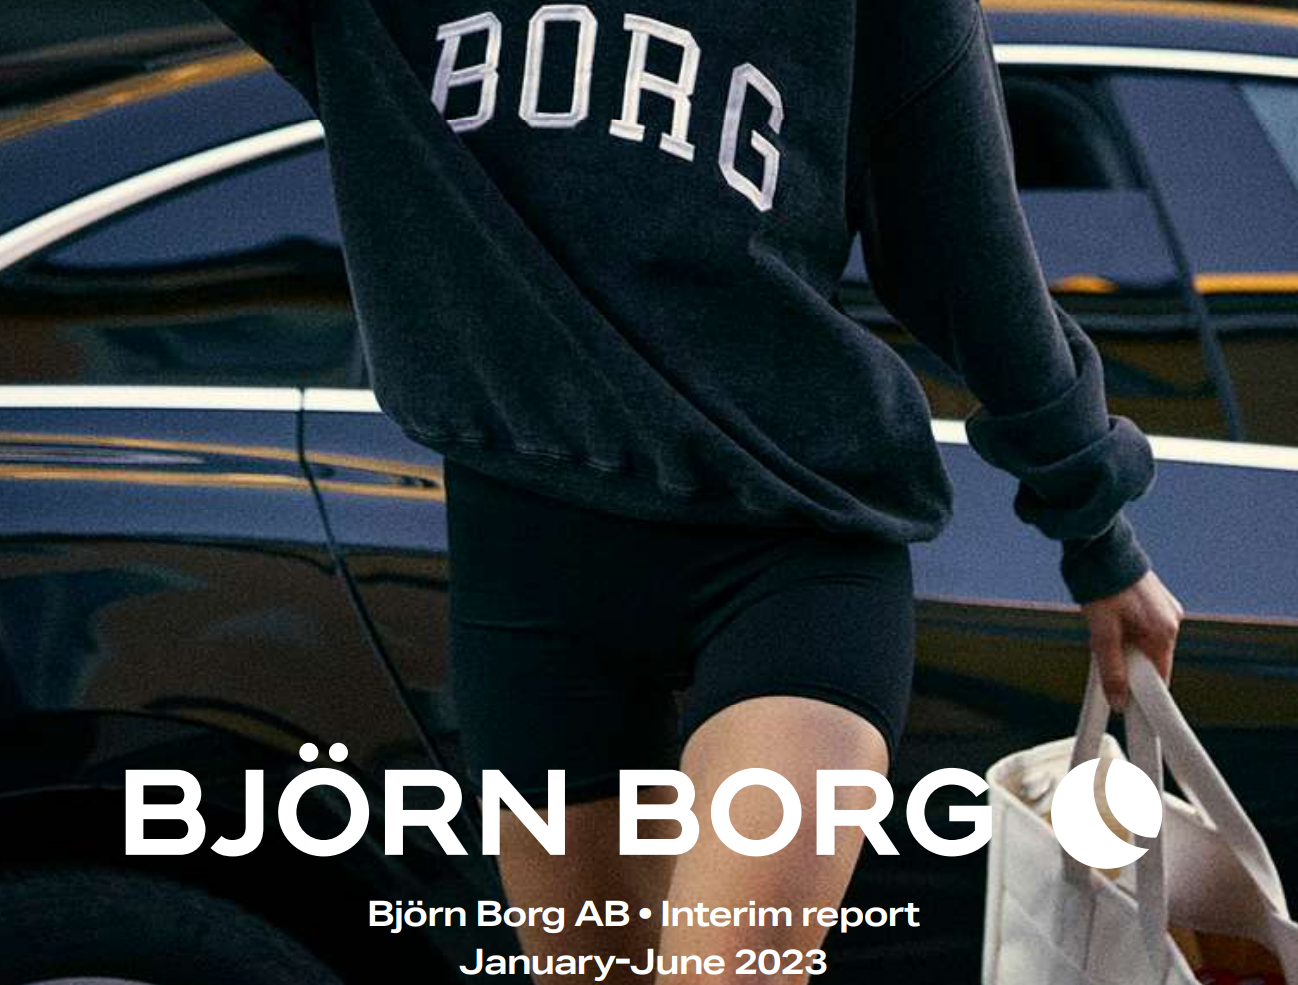 瑞典运动品牌 BJÖRN BORG上半年运动系列在自营电商渠道增长100%